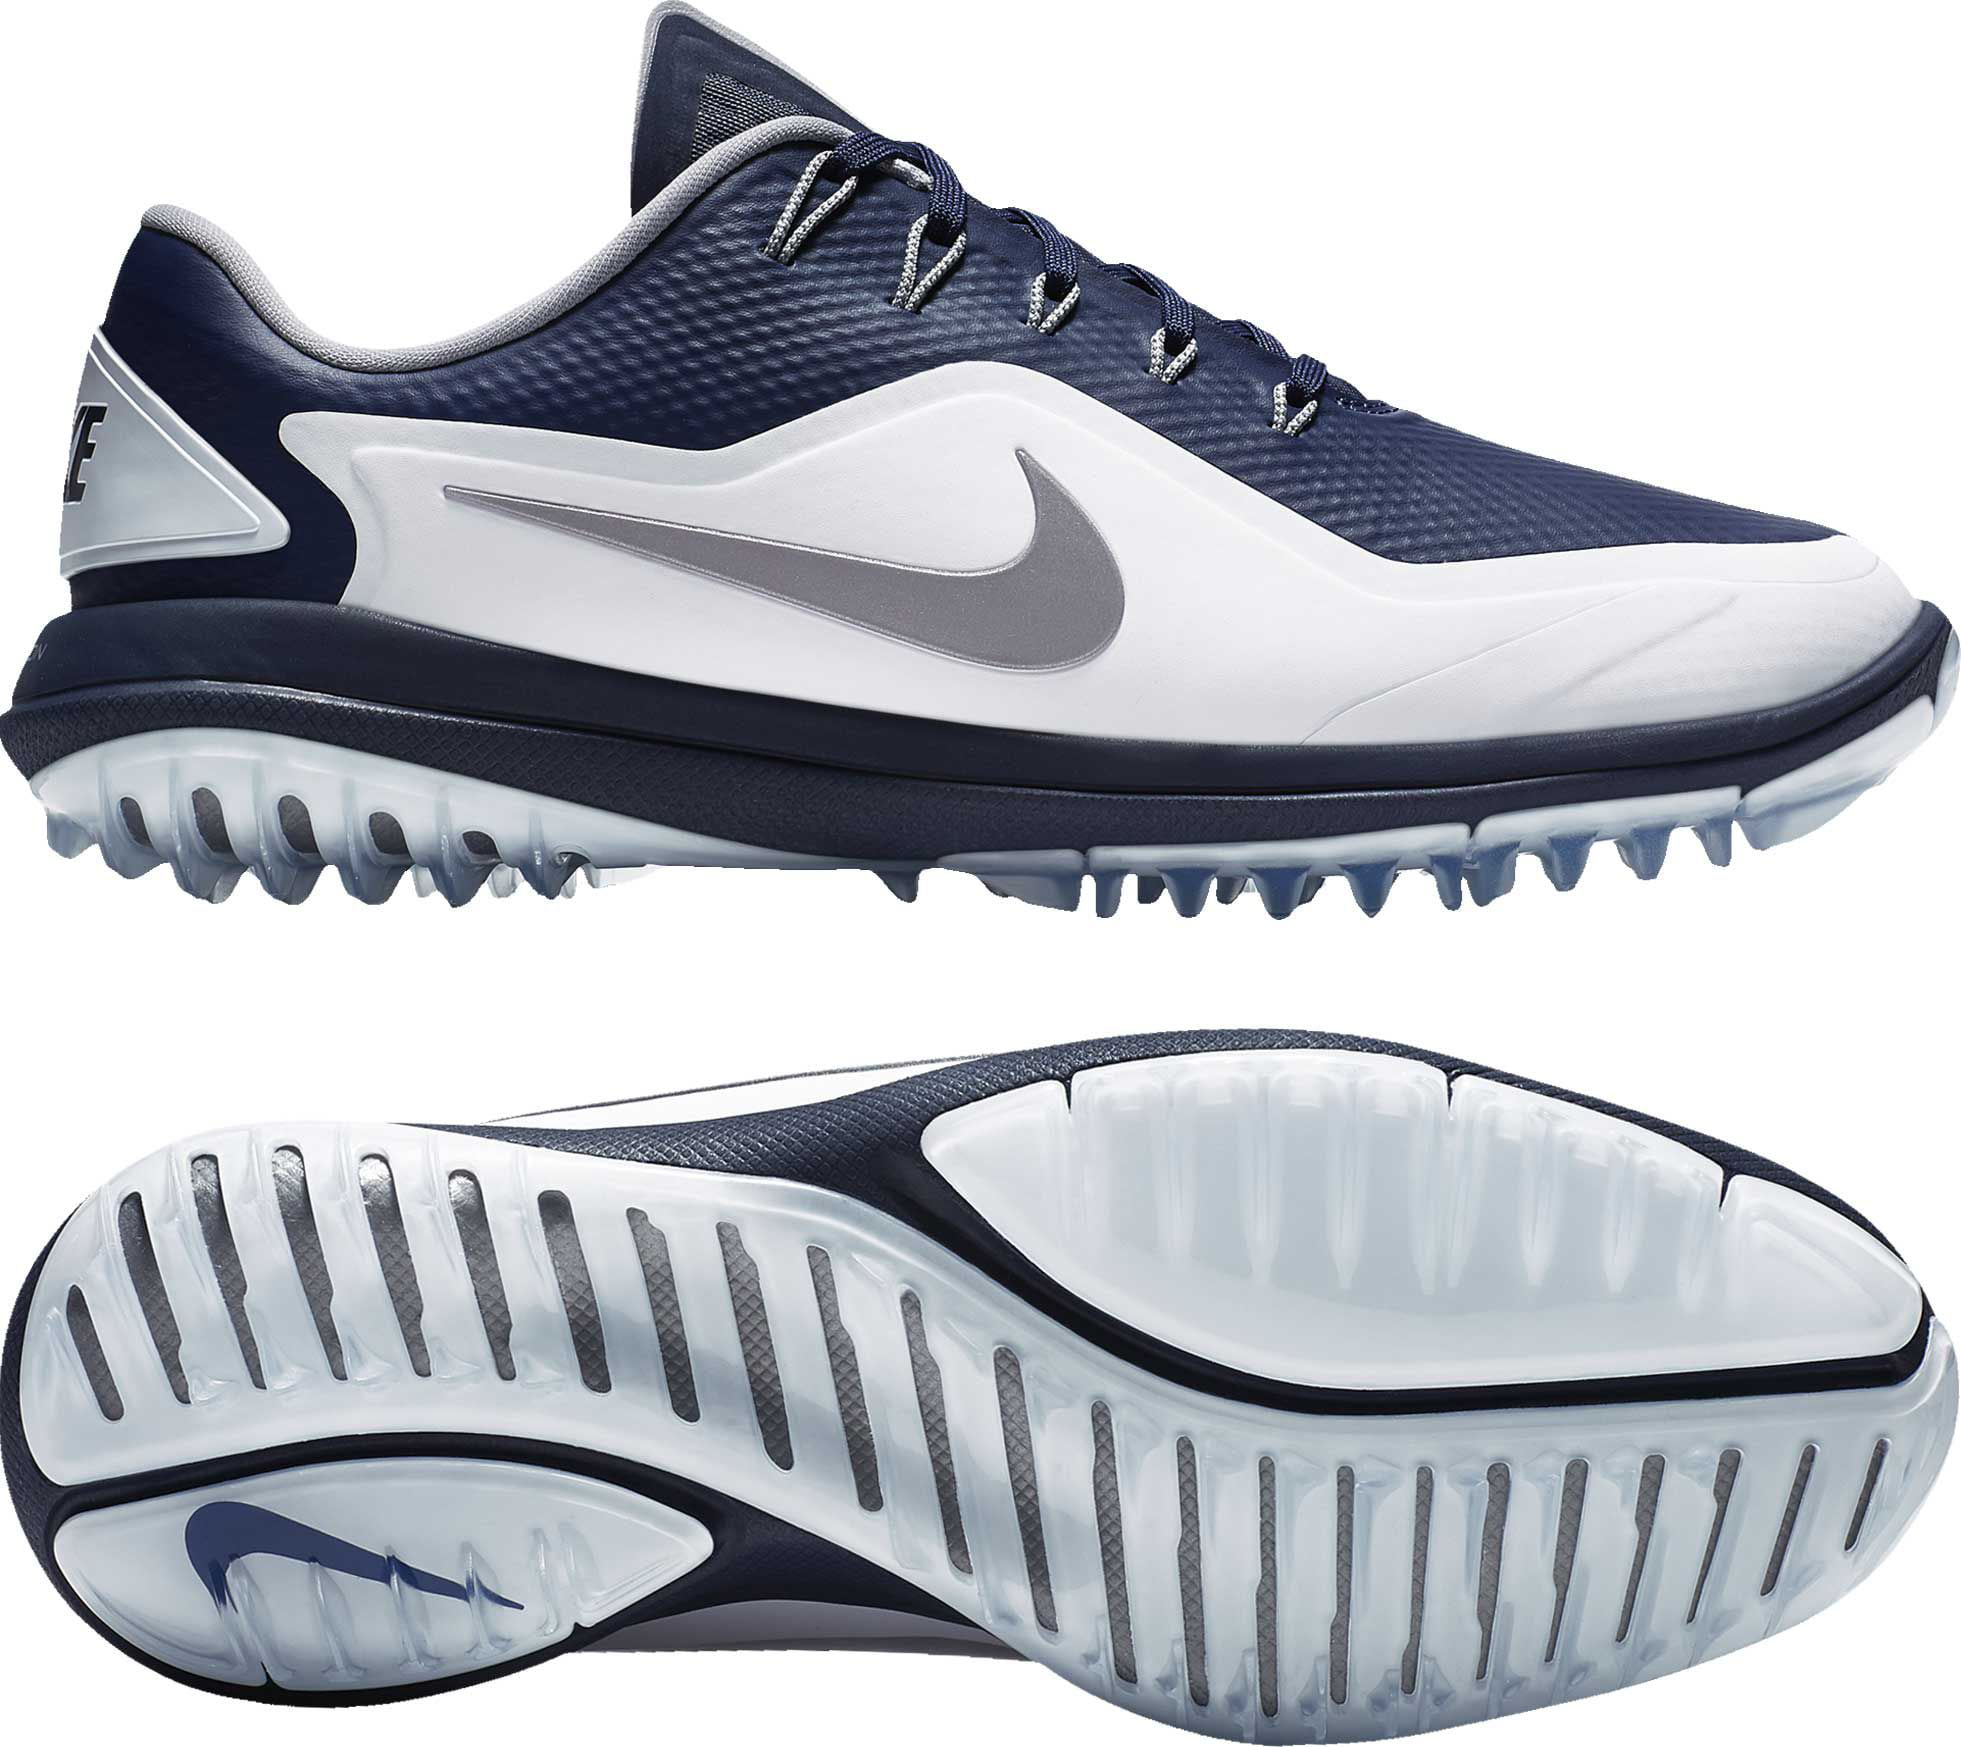 Nike Lunar Control Vapor 2 Golf Shoes